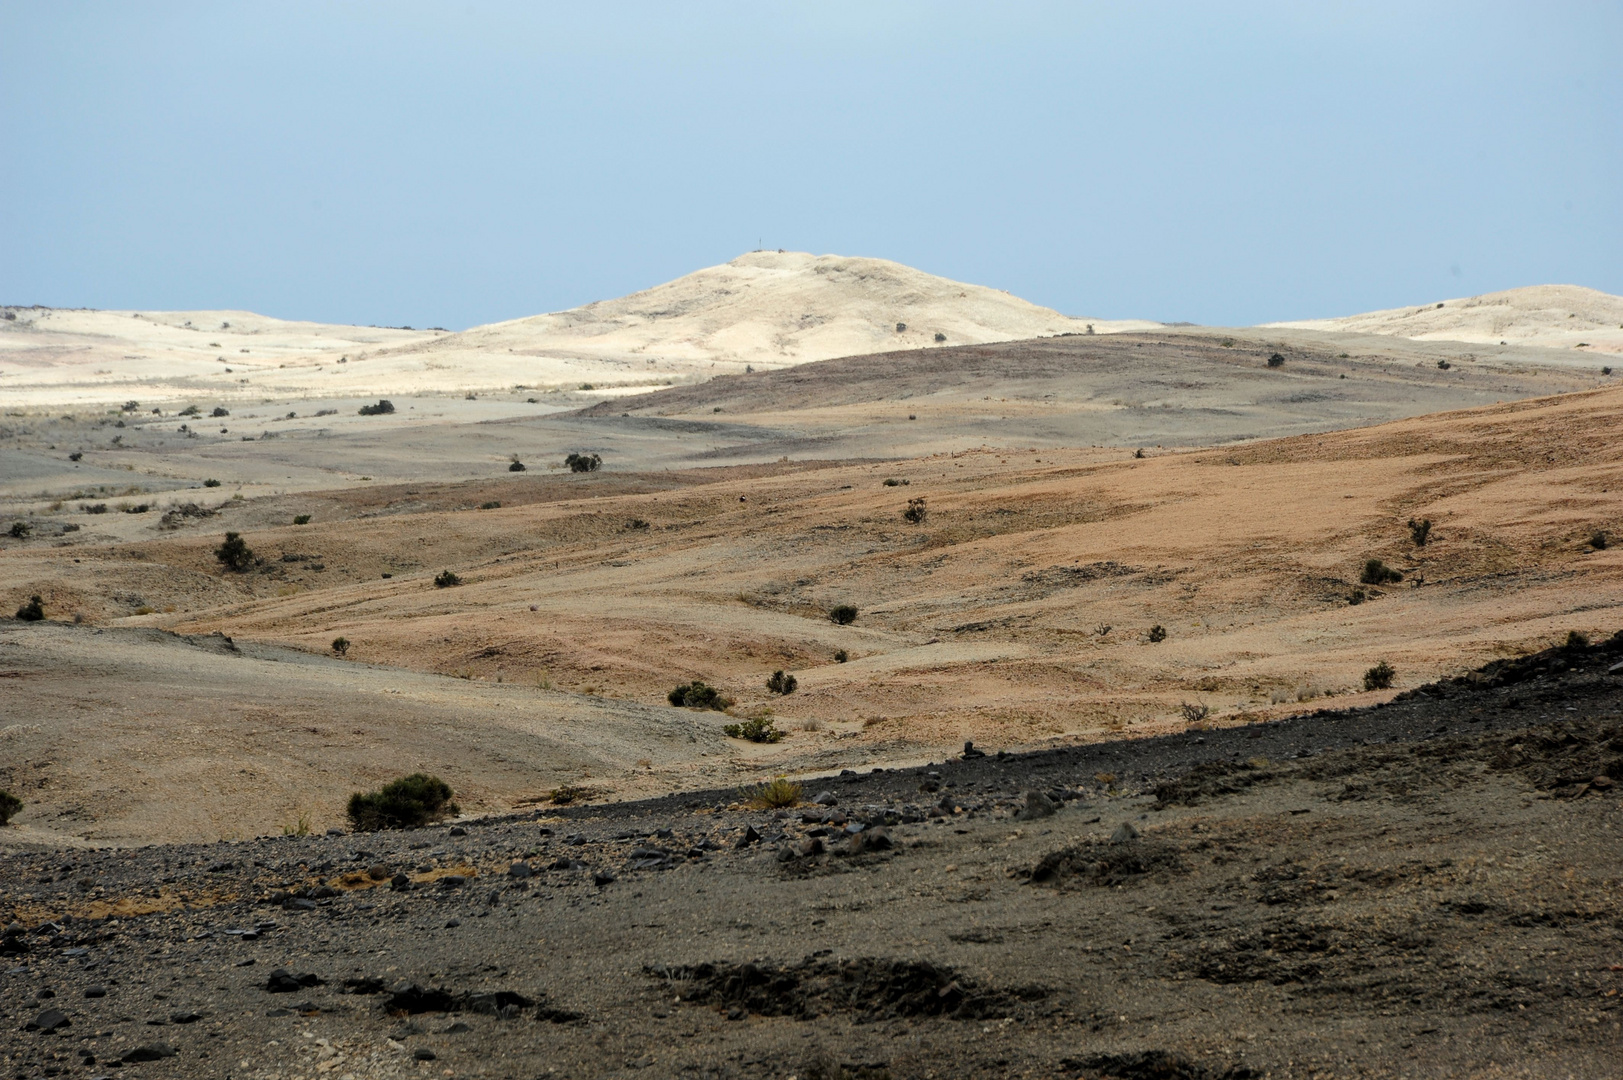 Die Farben der "Weissen Namib" / Colors of the "White Namib"